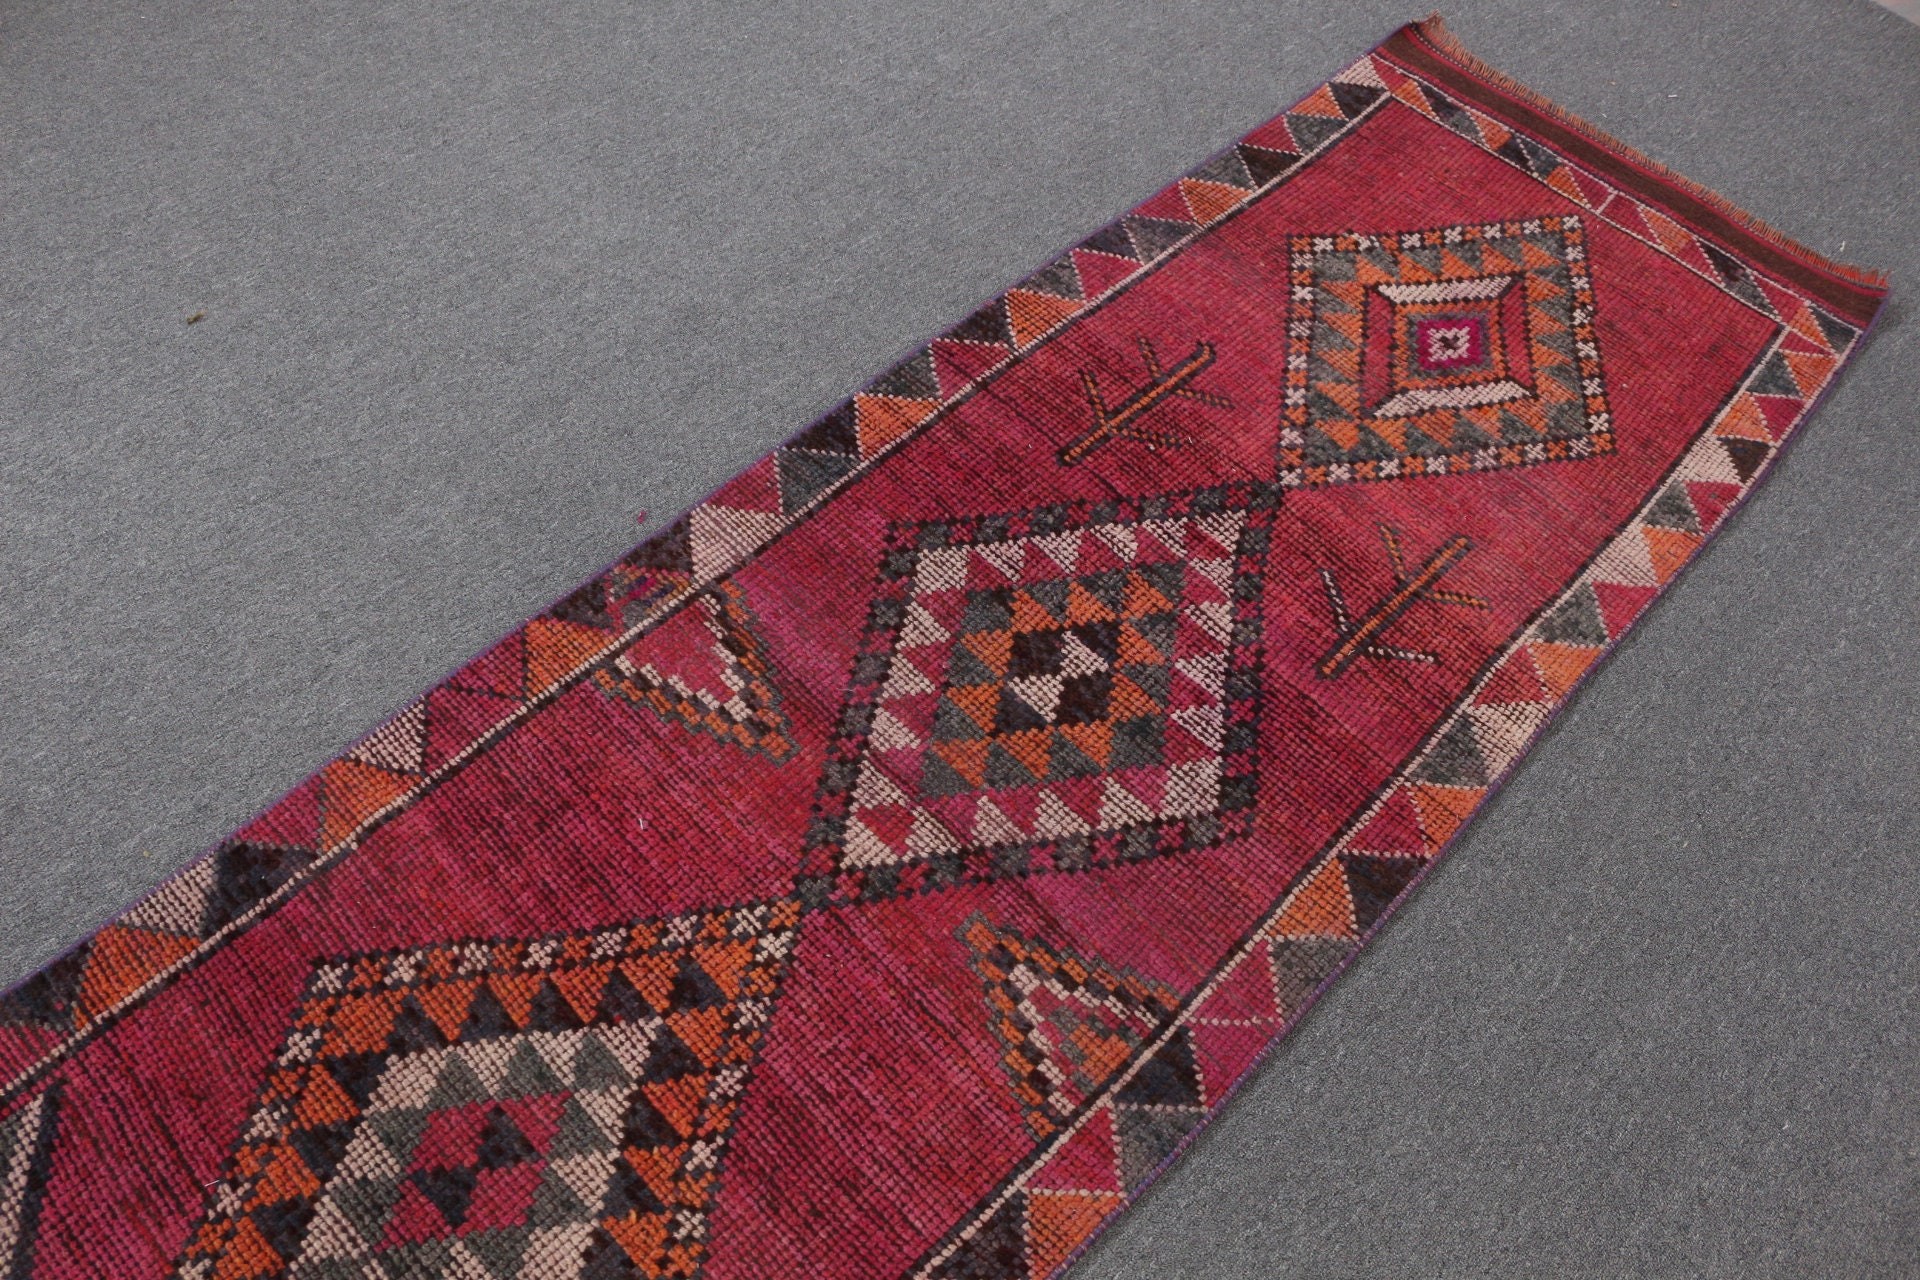 Anatolian Rugs, Pale Rug, Vintage Rug, Wool Rugs, Kitchen Rug, 2.5x11.6 ft Runner Rug, Corridor Rug, Turkish Rugs, Purple Bedroom Rugs